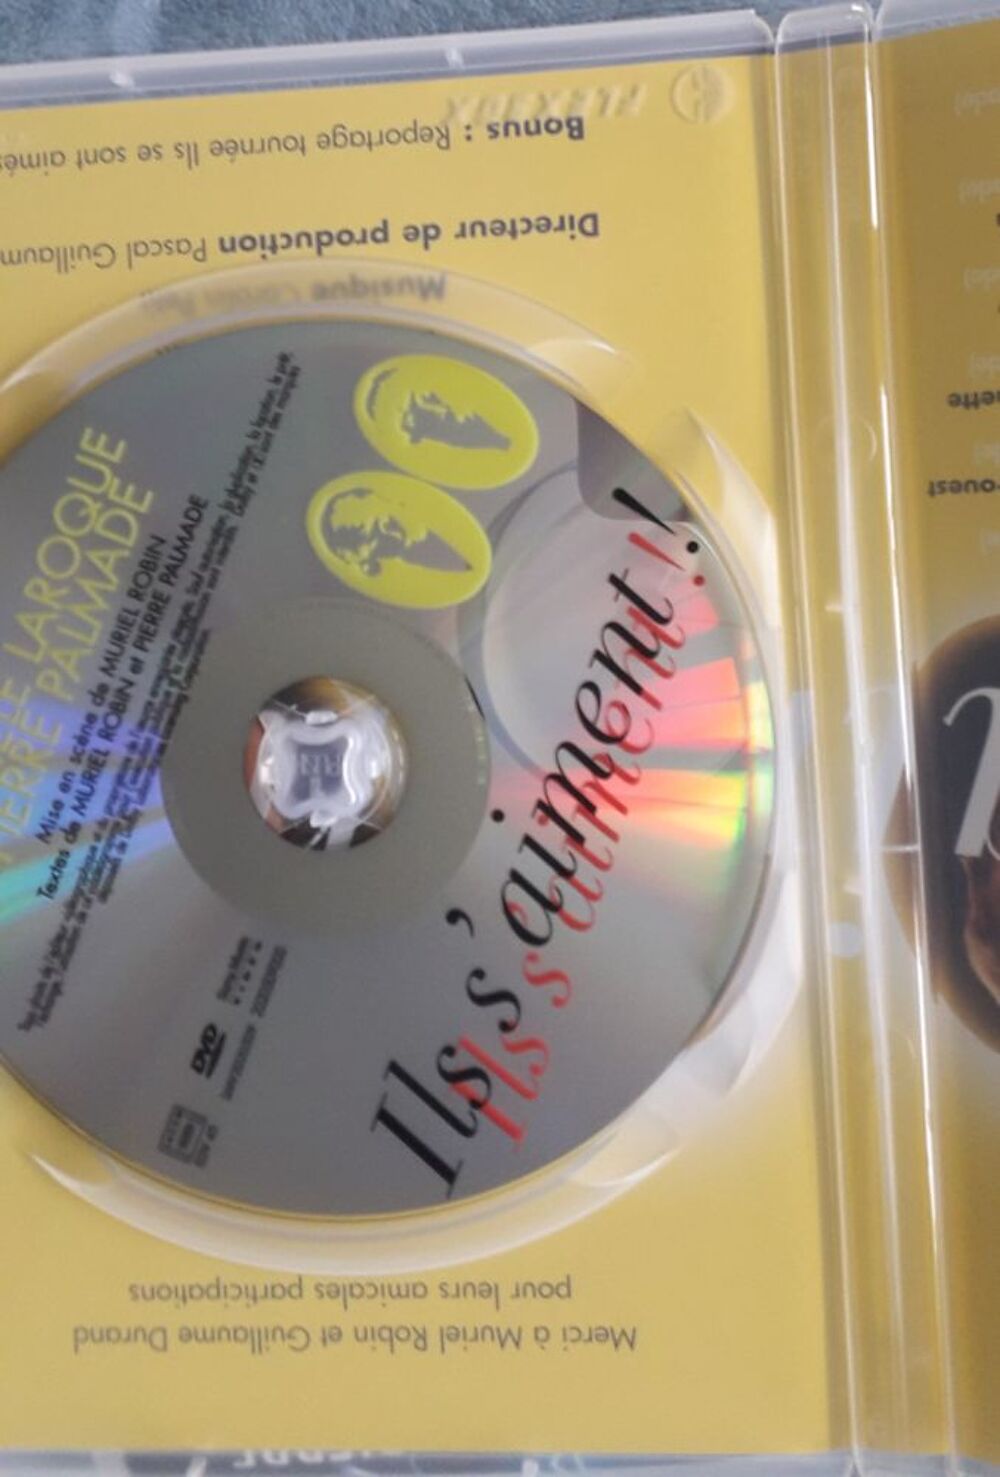 2 DVD : Mich&egrave;le Laroque et Pierre Palmade DVD et blu-ray